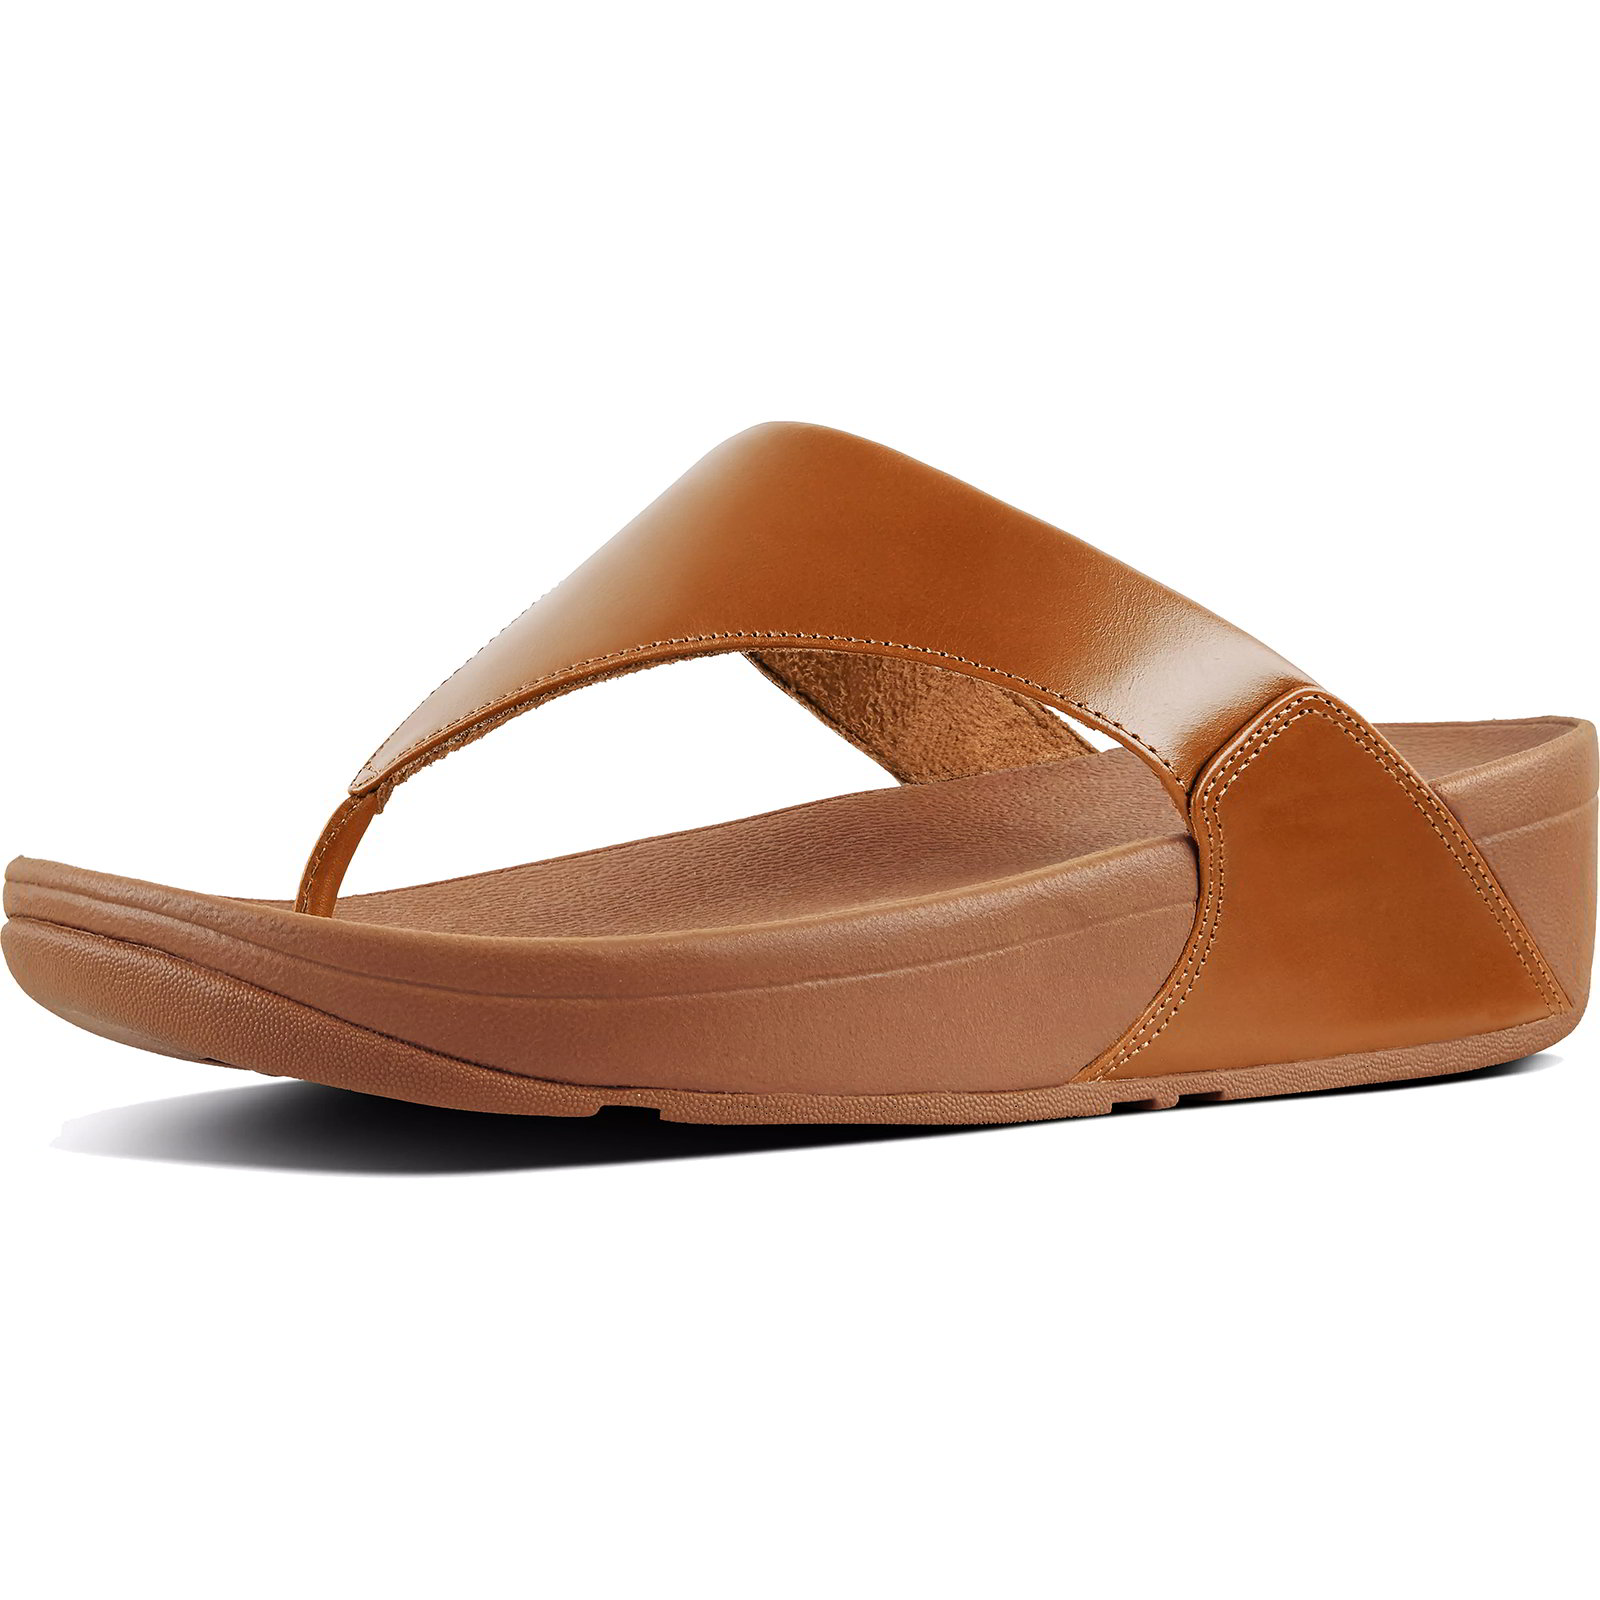 Fitflop Women's Lulu Leather Toe Post Flip Flop Sandals - Light Tan - UK 5